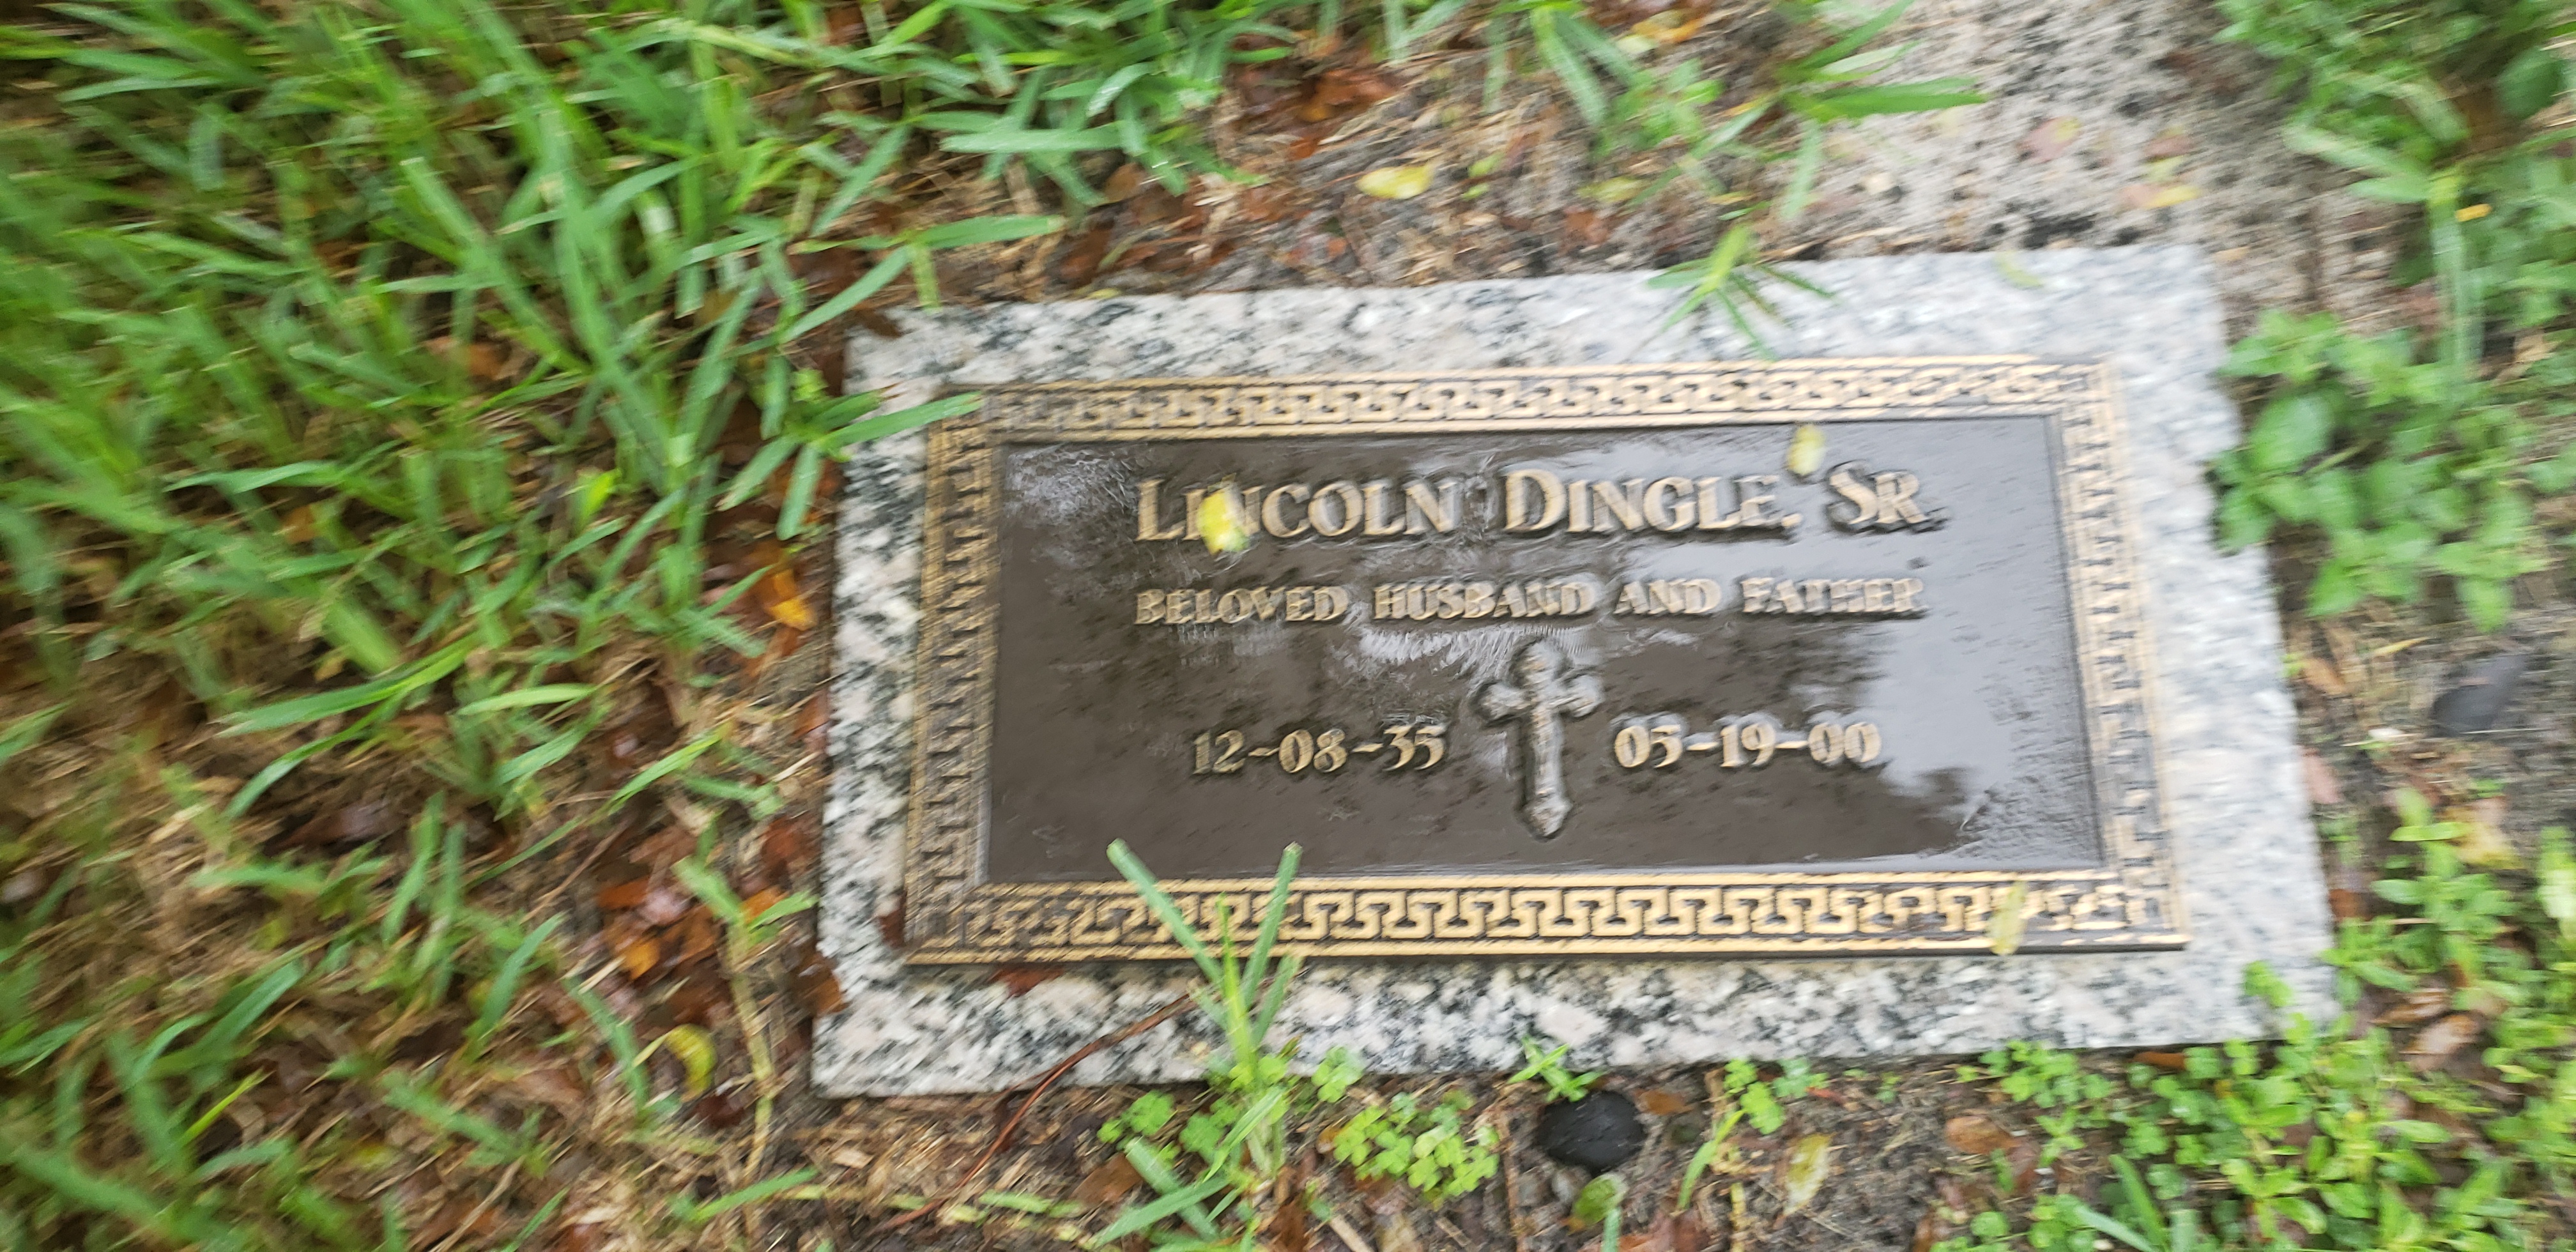 Lincoln Dingle, Sr